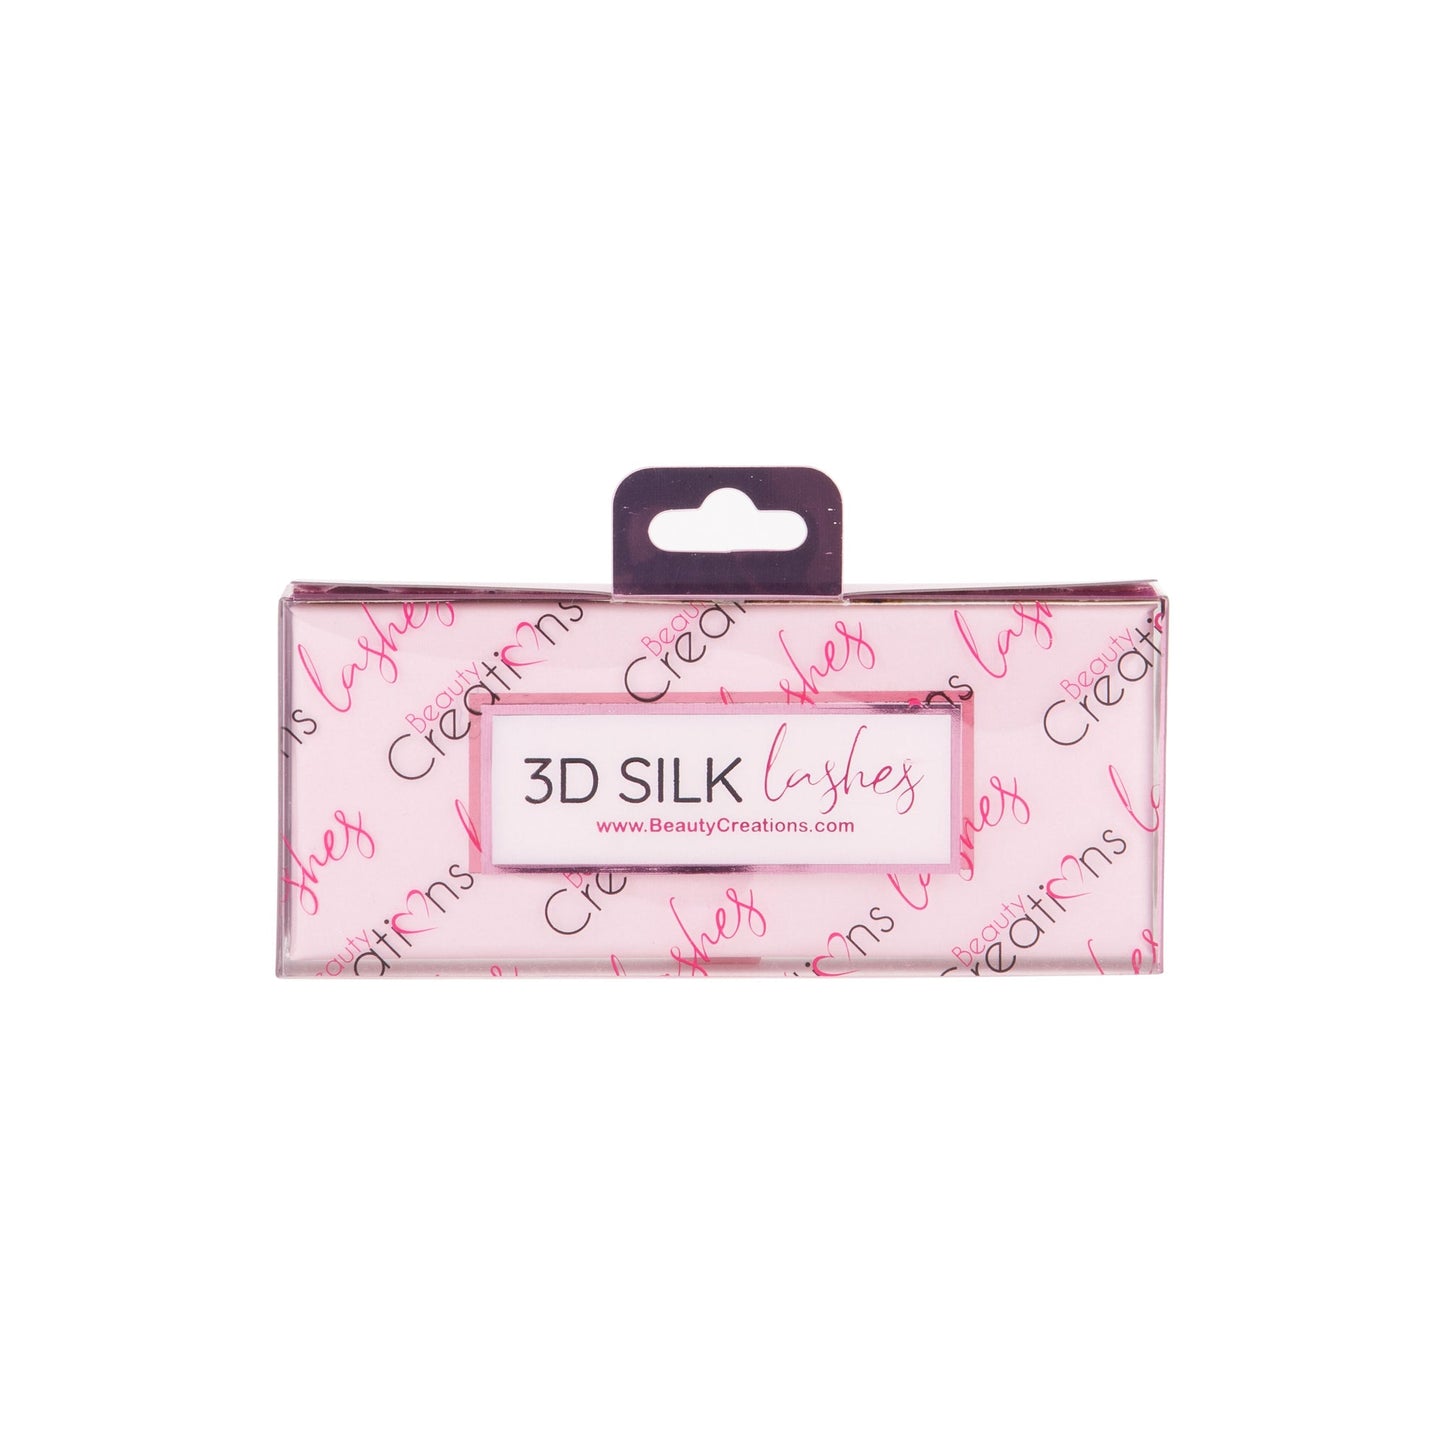 Gossip - 3D Silk Lashes